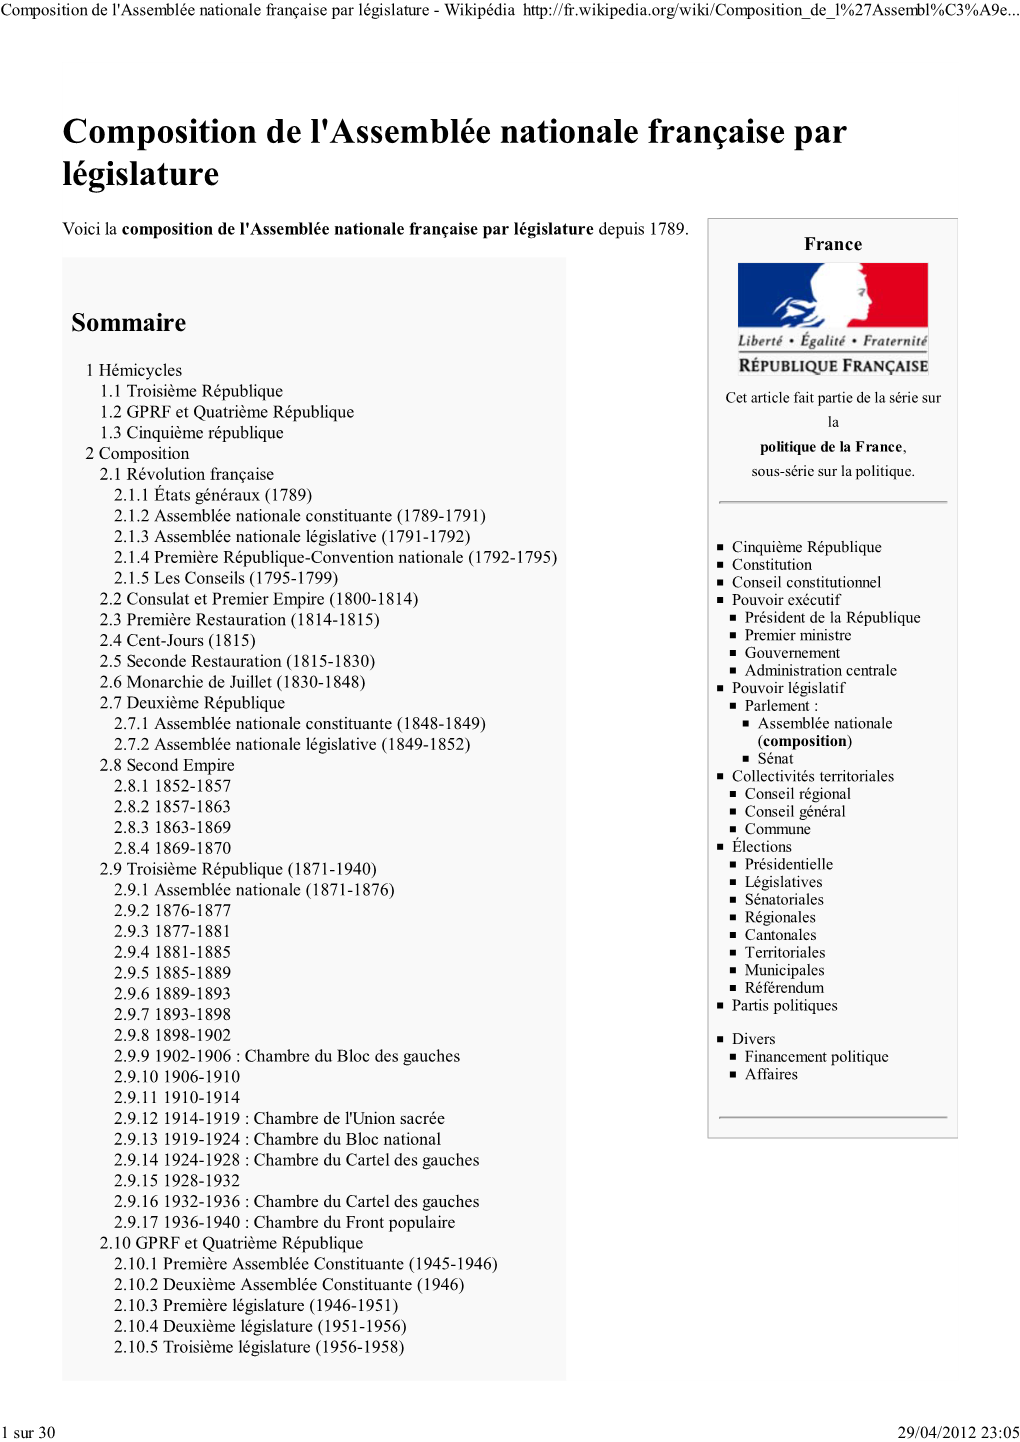 Composition De L'assemblée Nationale Française Par Législature - Wikipédia